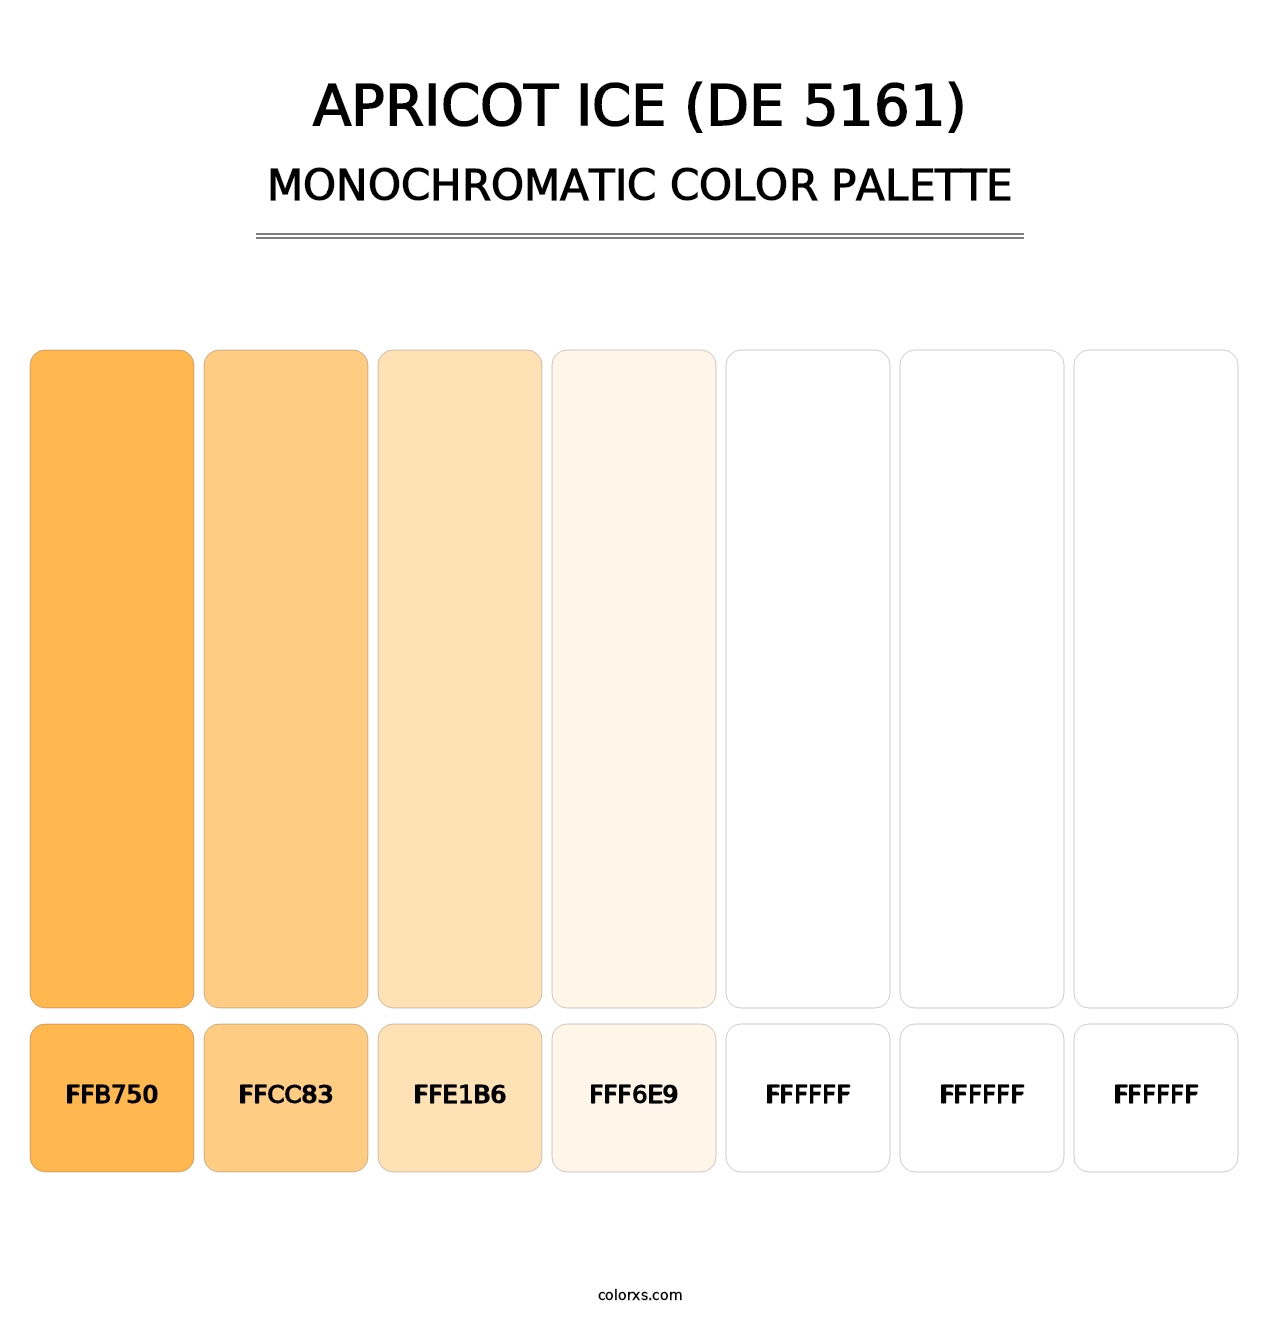 Apricot Ice (DE 5161) - Monochromatic Color Palette